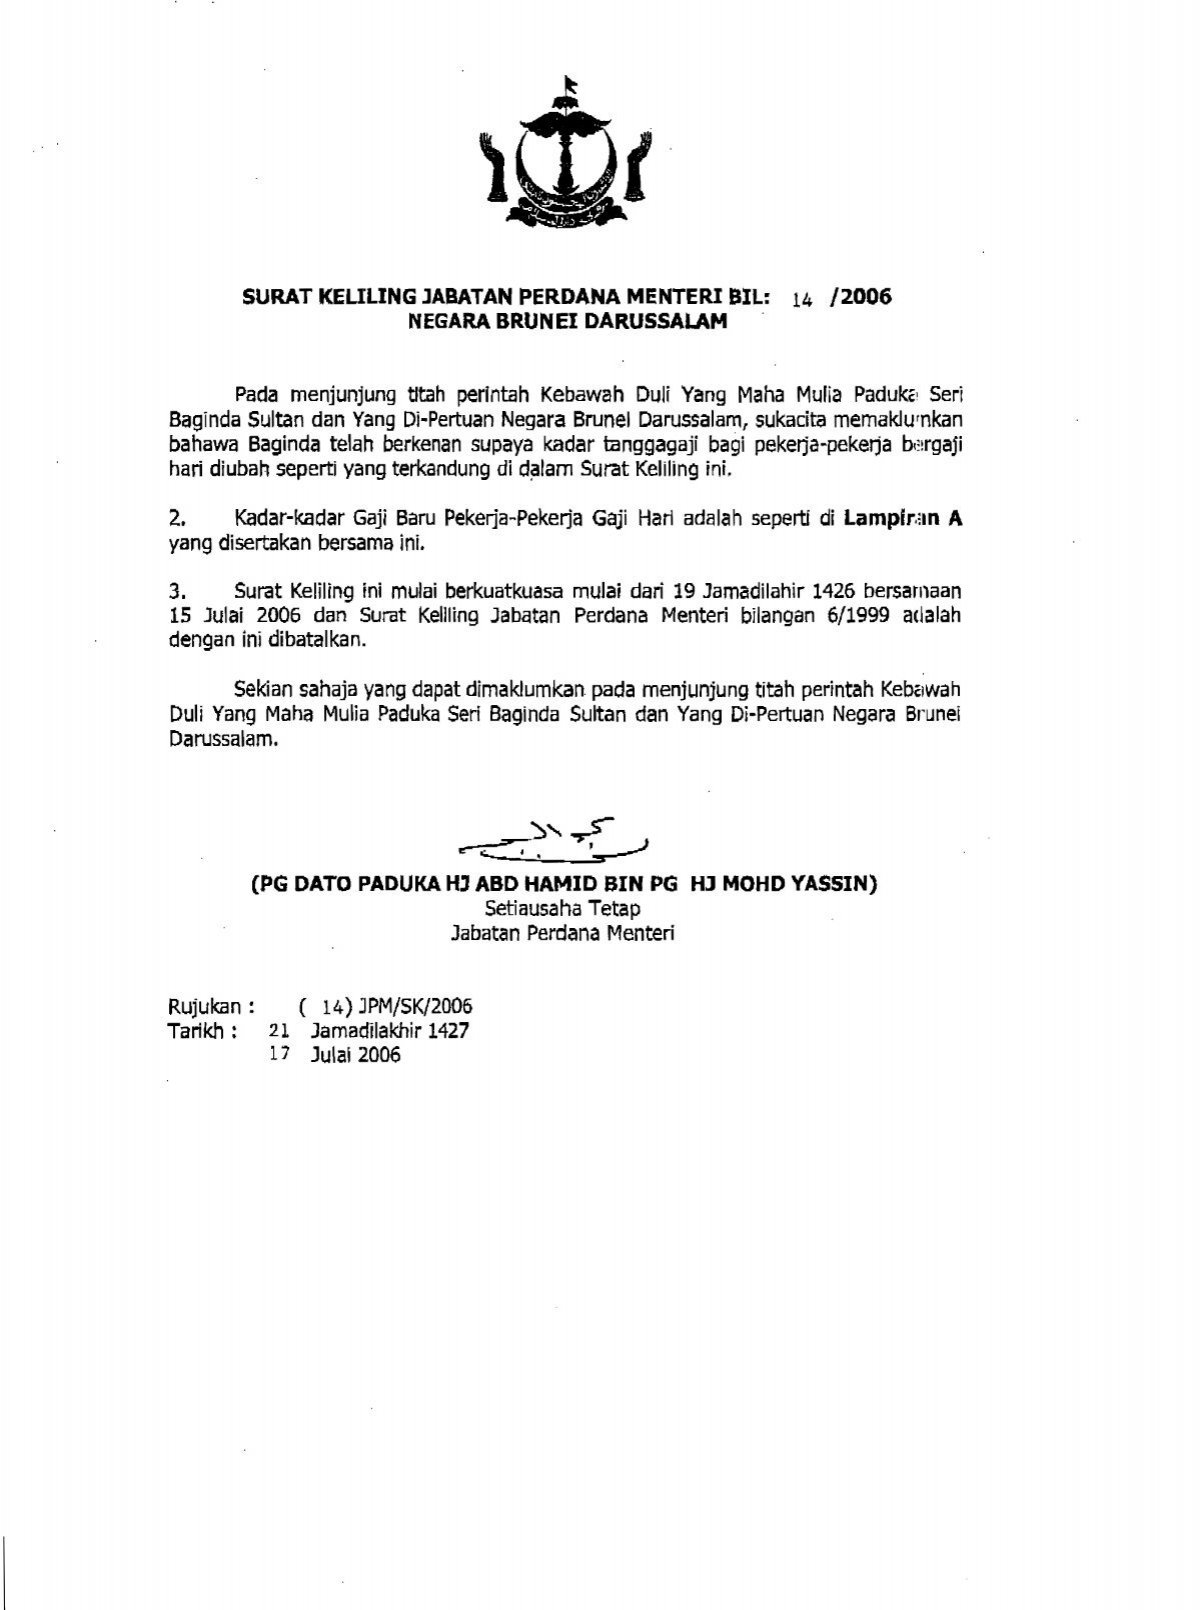 Surat keliling jabatan perdana menteri bil 14/2006 